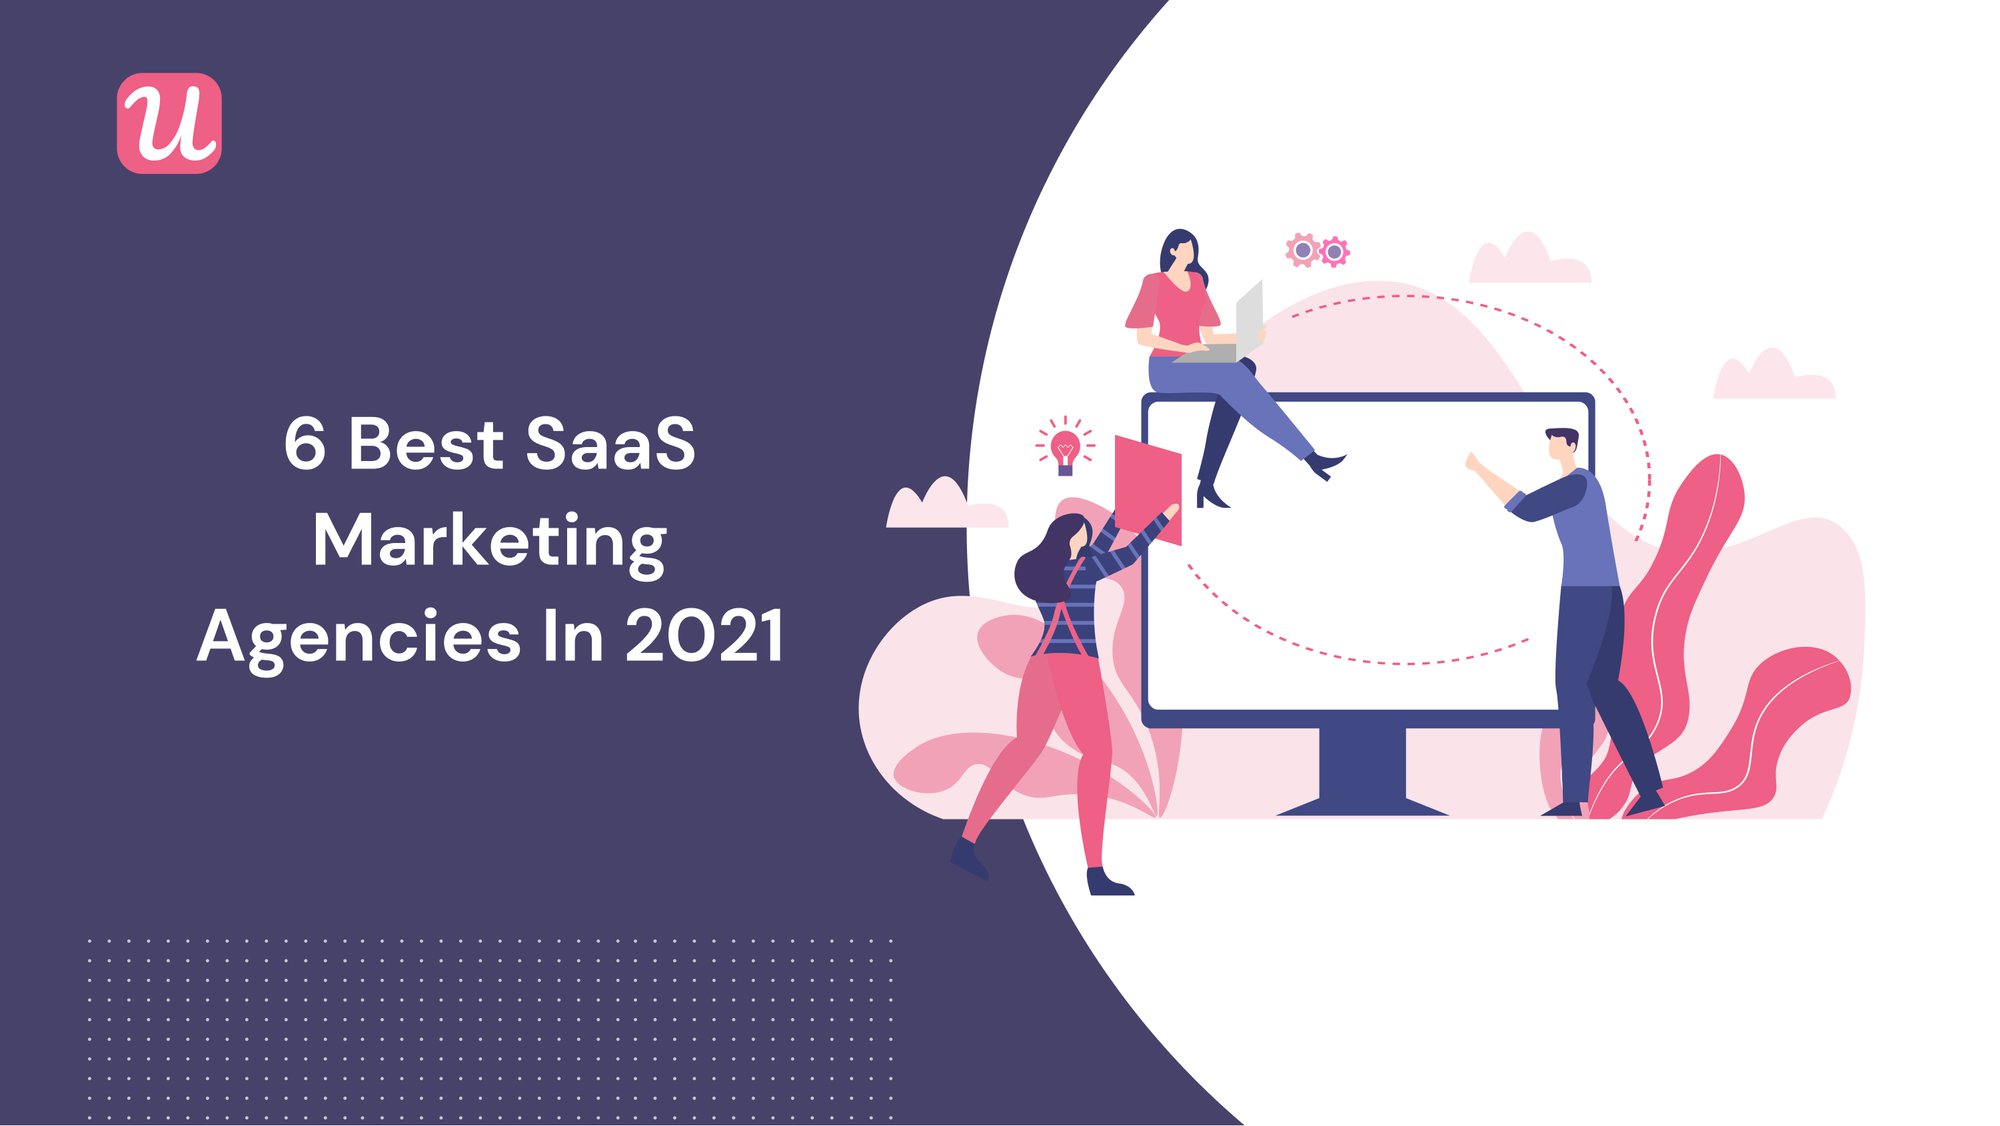 The 6 Best SaaS Marketing Agencies in 2021